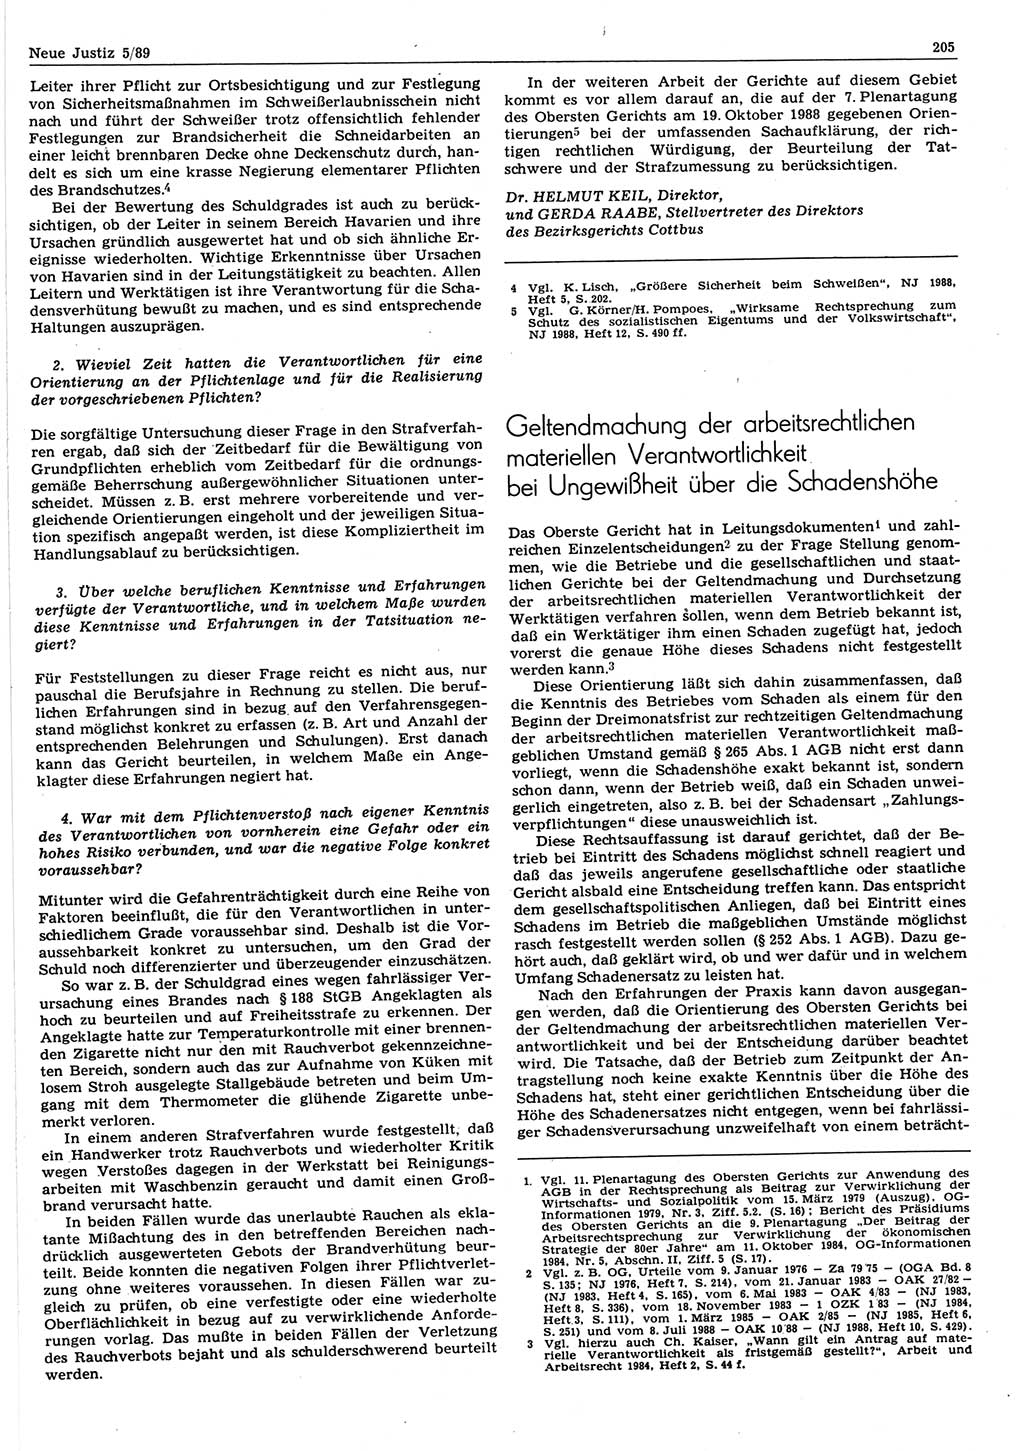 Neue Justiz (NJ), Zeitschrift für sozialistisches Recht und Gesetzlichkeit [Deutsche Demokratische Republik (DDR)], 43. Jahrgang 1989, Seite 205 (NJ DDR 1989, S. 205)